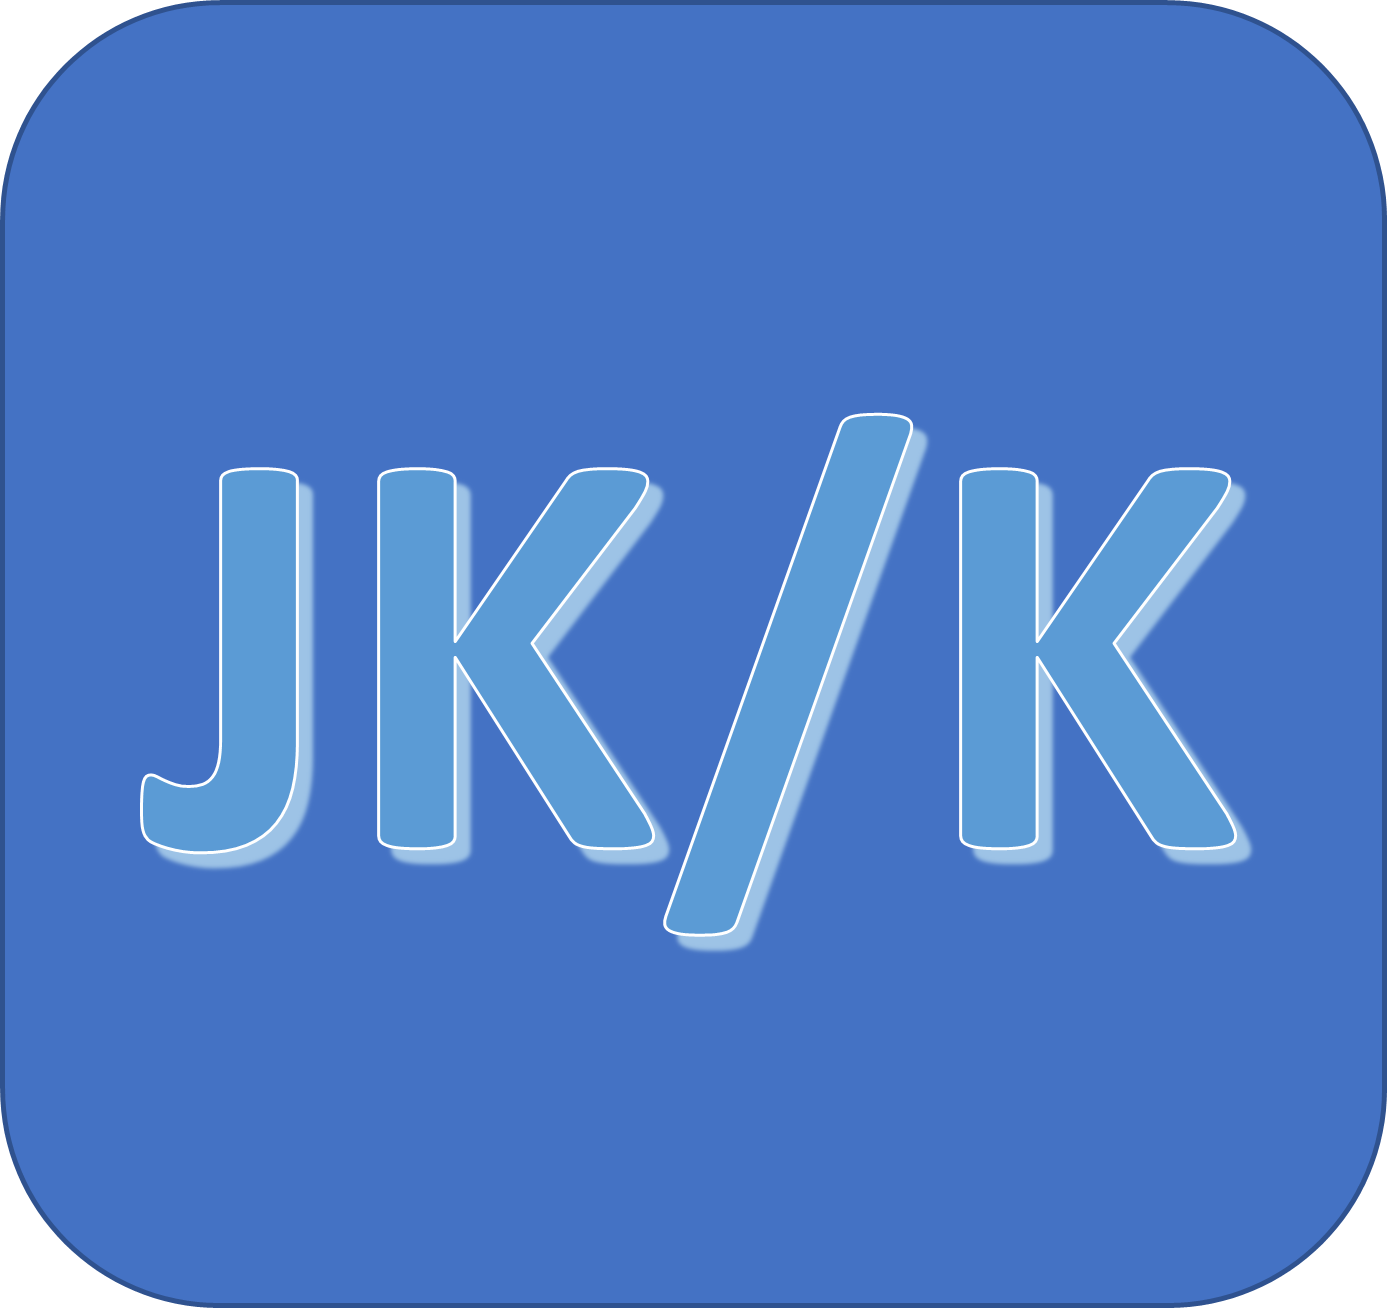 jk/k